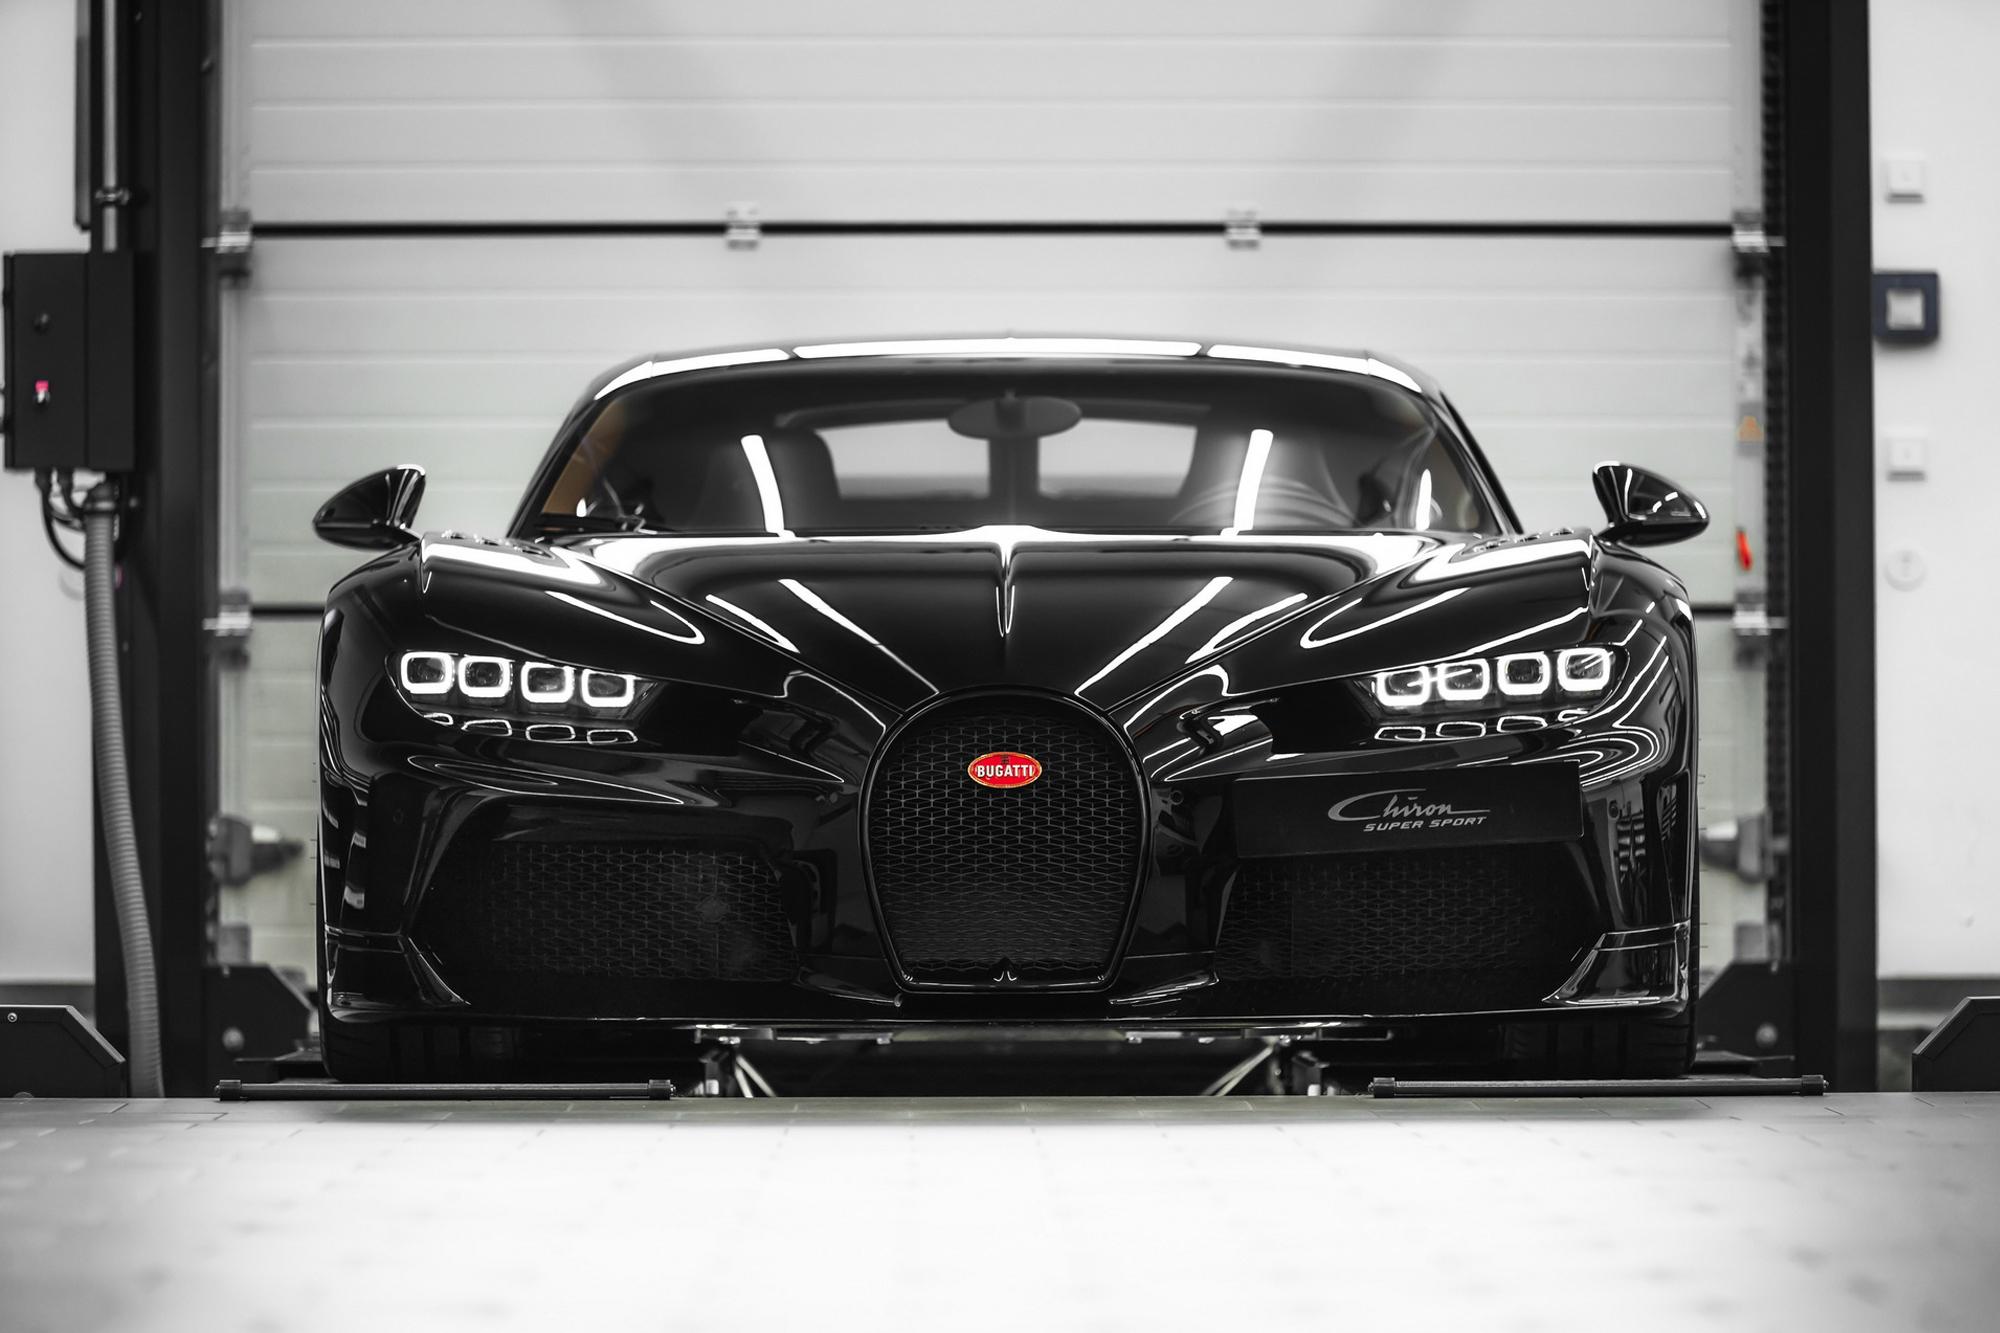 Πως δοκιμάζει η Bugatti την Chiron στο δυναμόμετρο